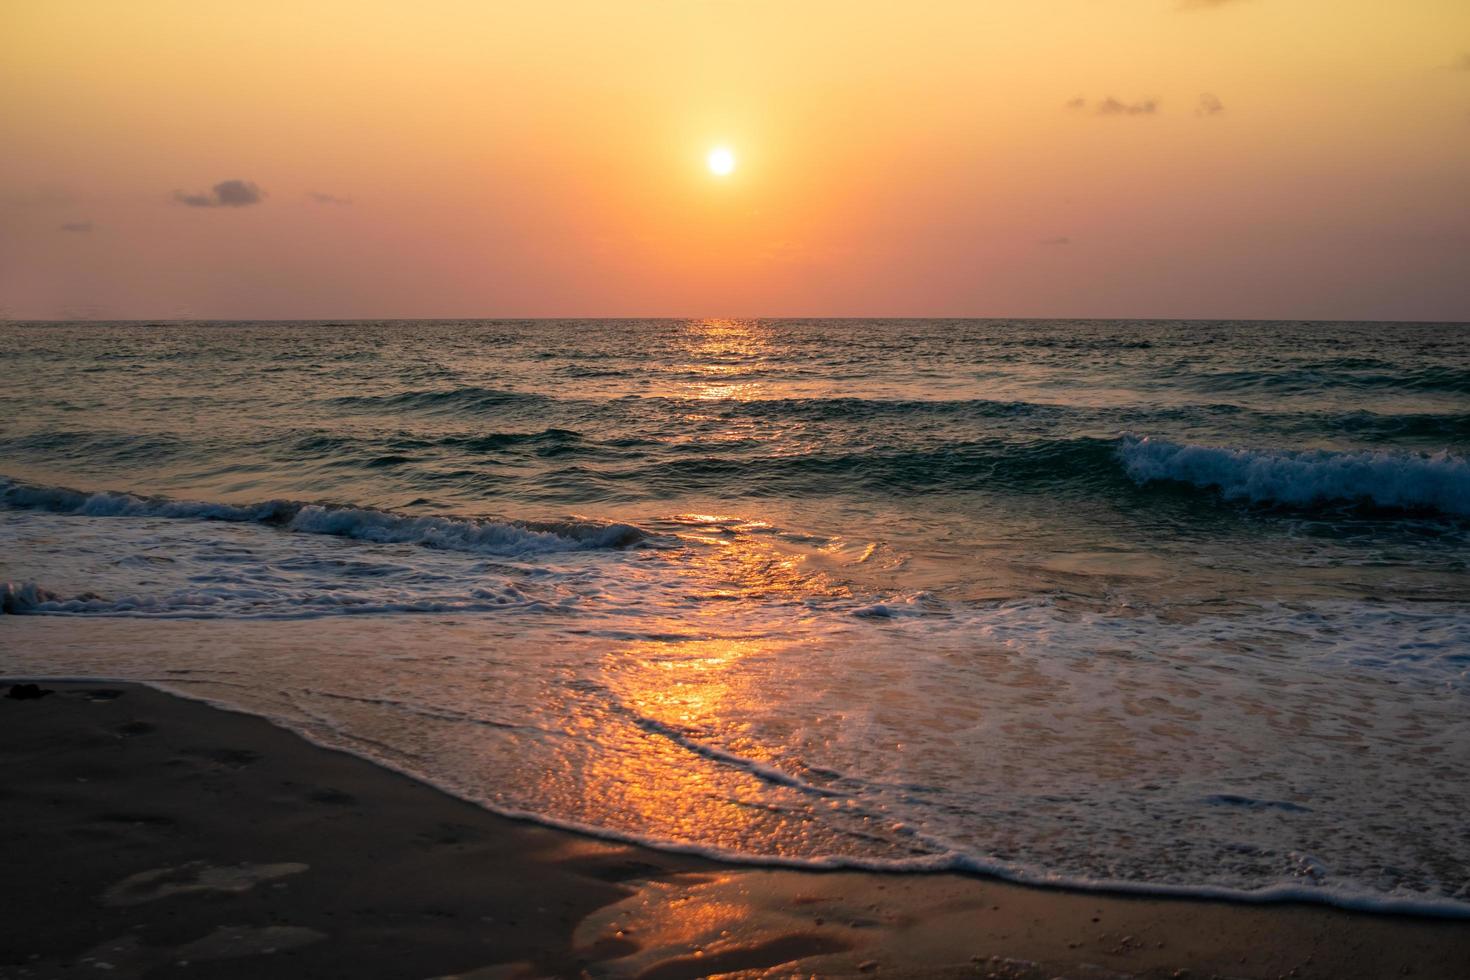 kleurrijke oceaanzee golven tijdens een zonsopgang of zonsondergang met de zon op de achtergrond foto